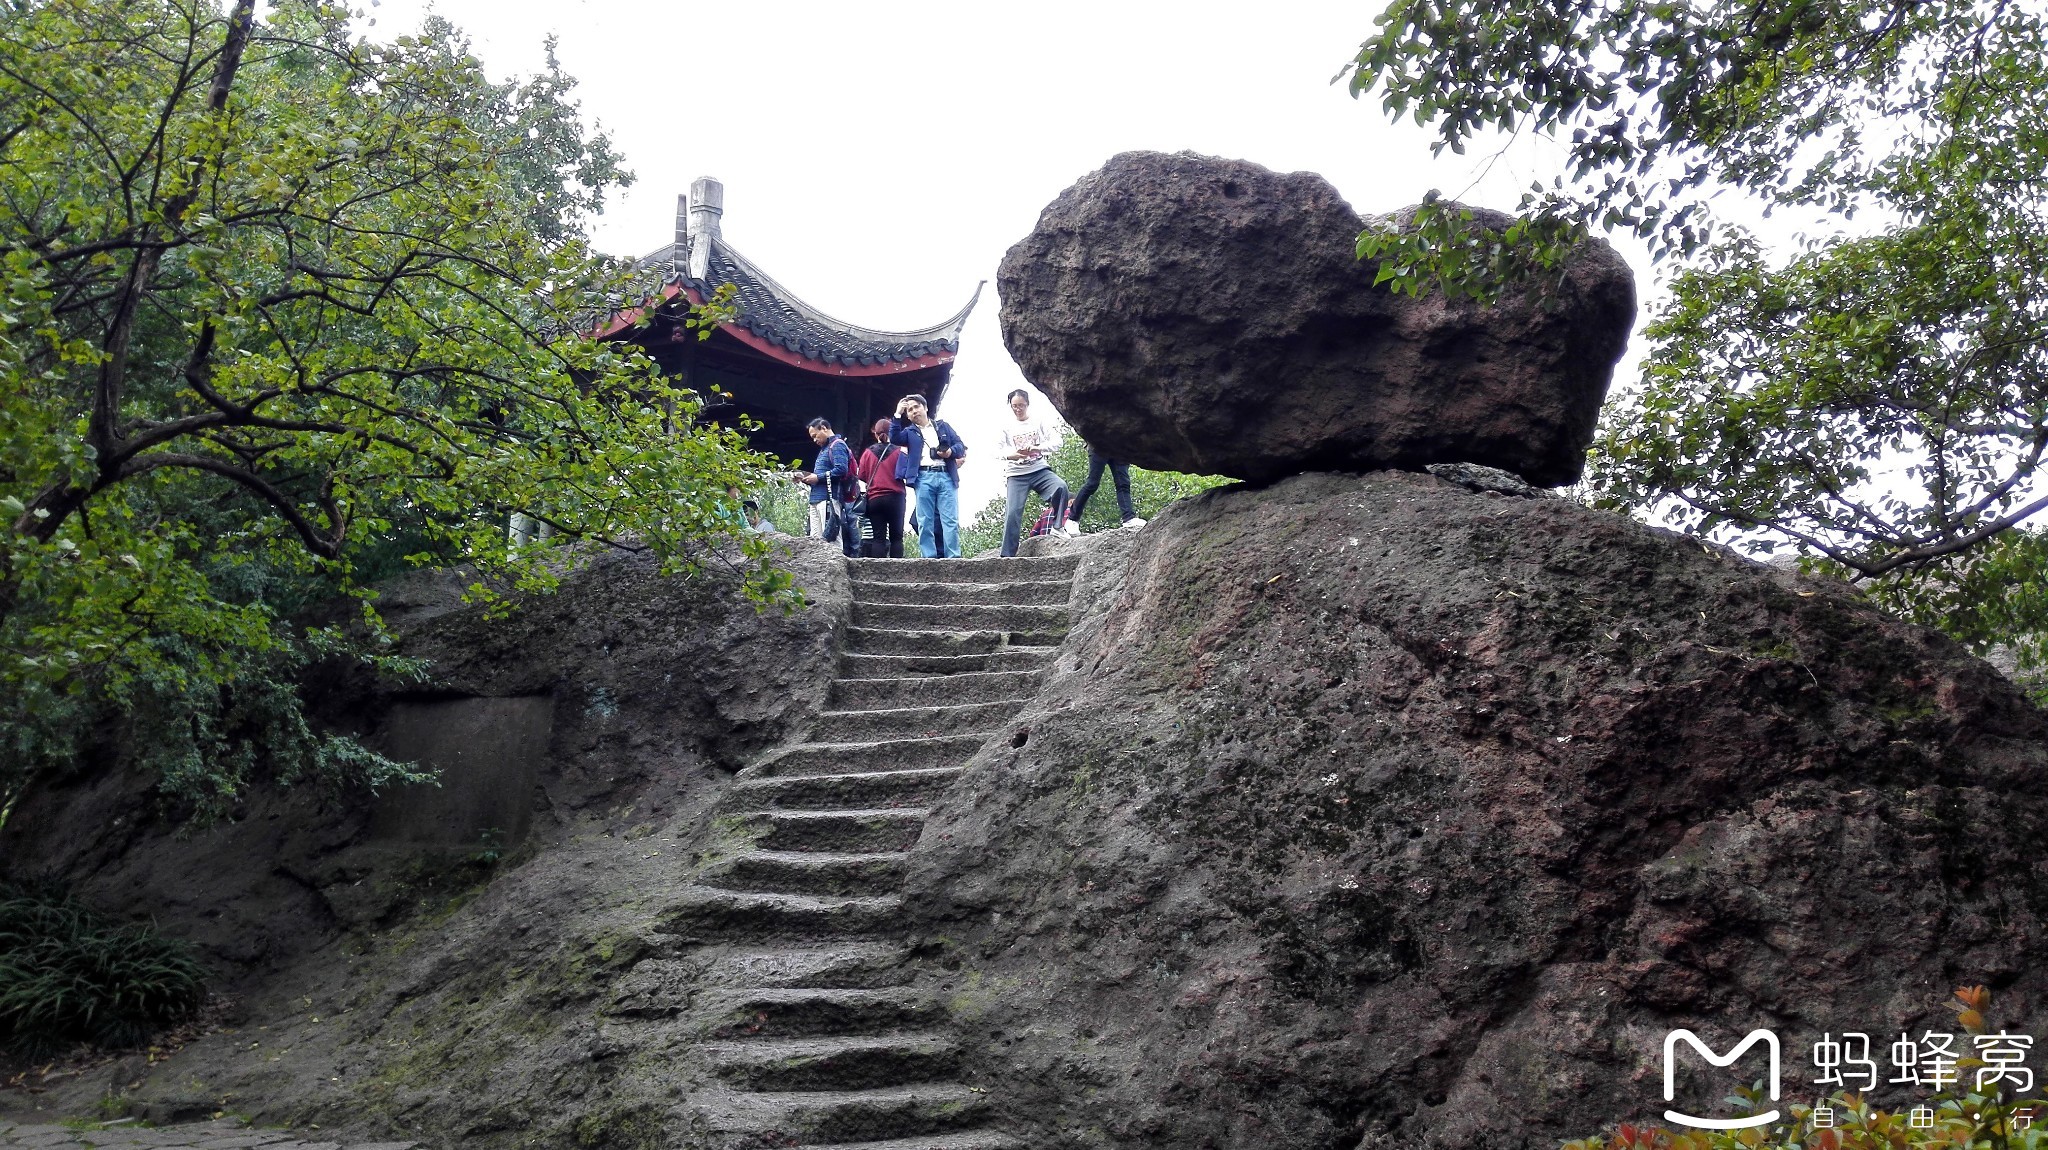 周末爬杭州的宝石山游览宝石流霞,保俶塔,眺望杭州西湖景色